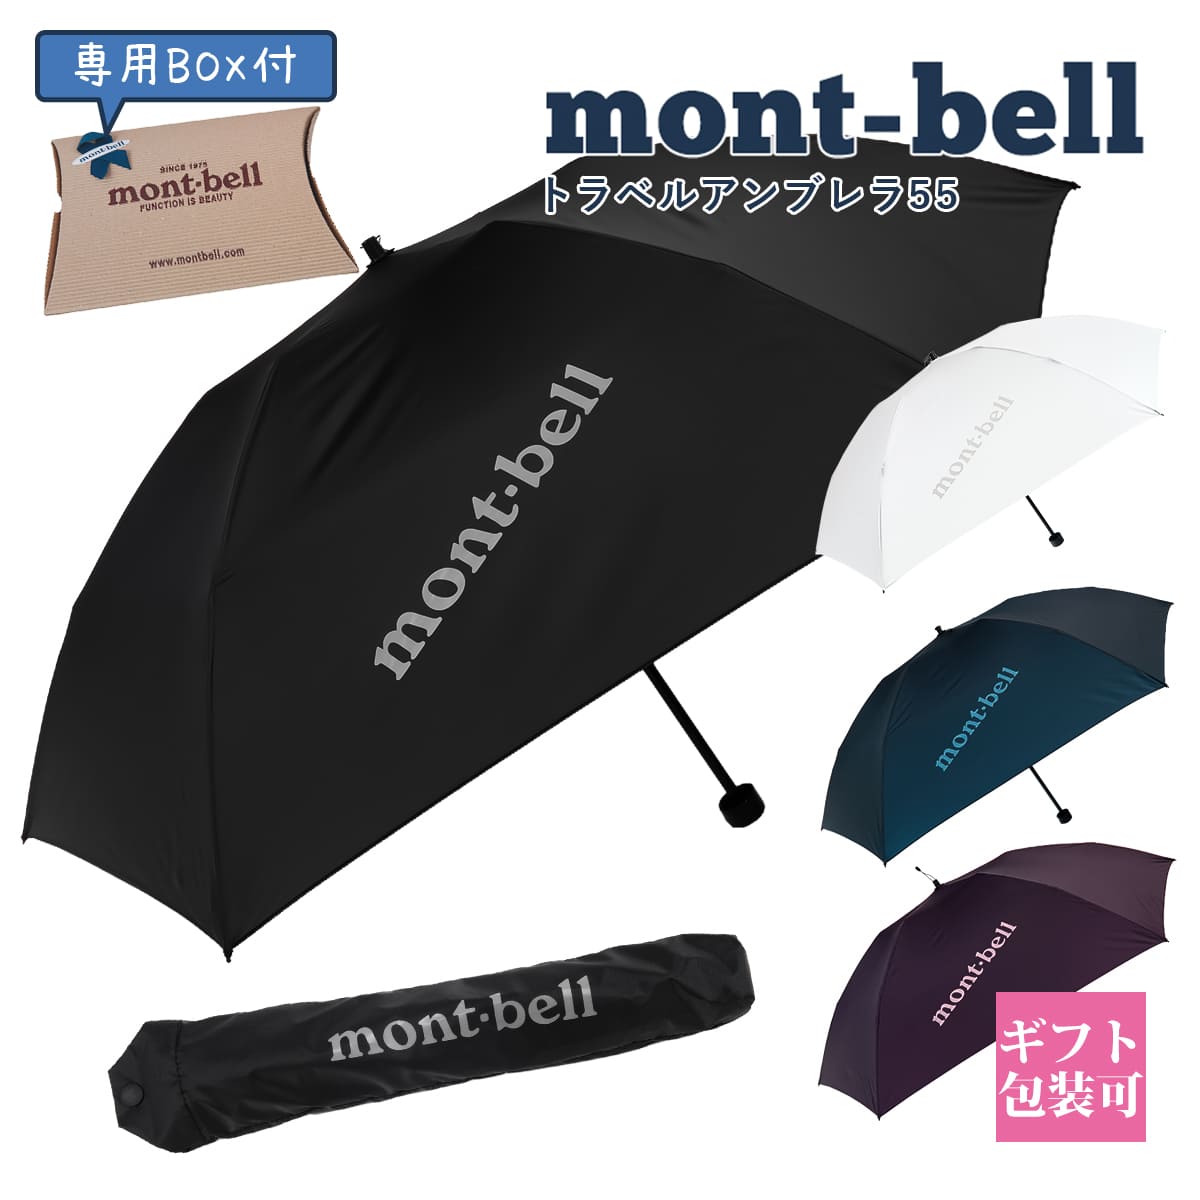 【楽天市場】モンベル 折りたたみ傘 雨傘 mont-bell 折りたたみ傘 